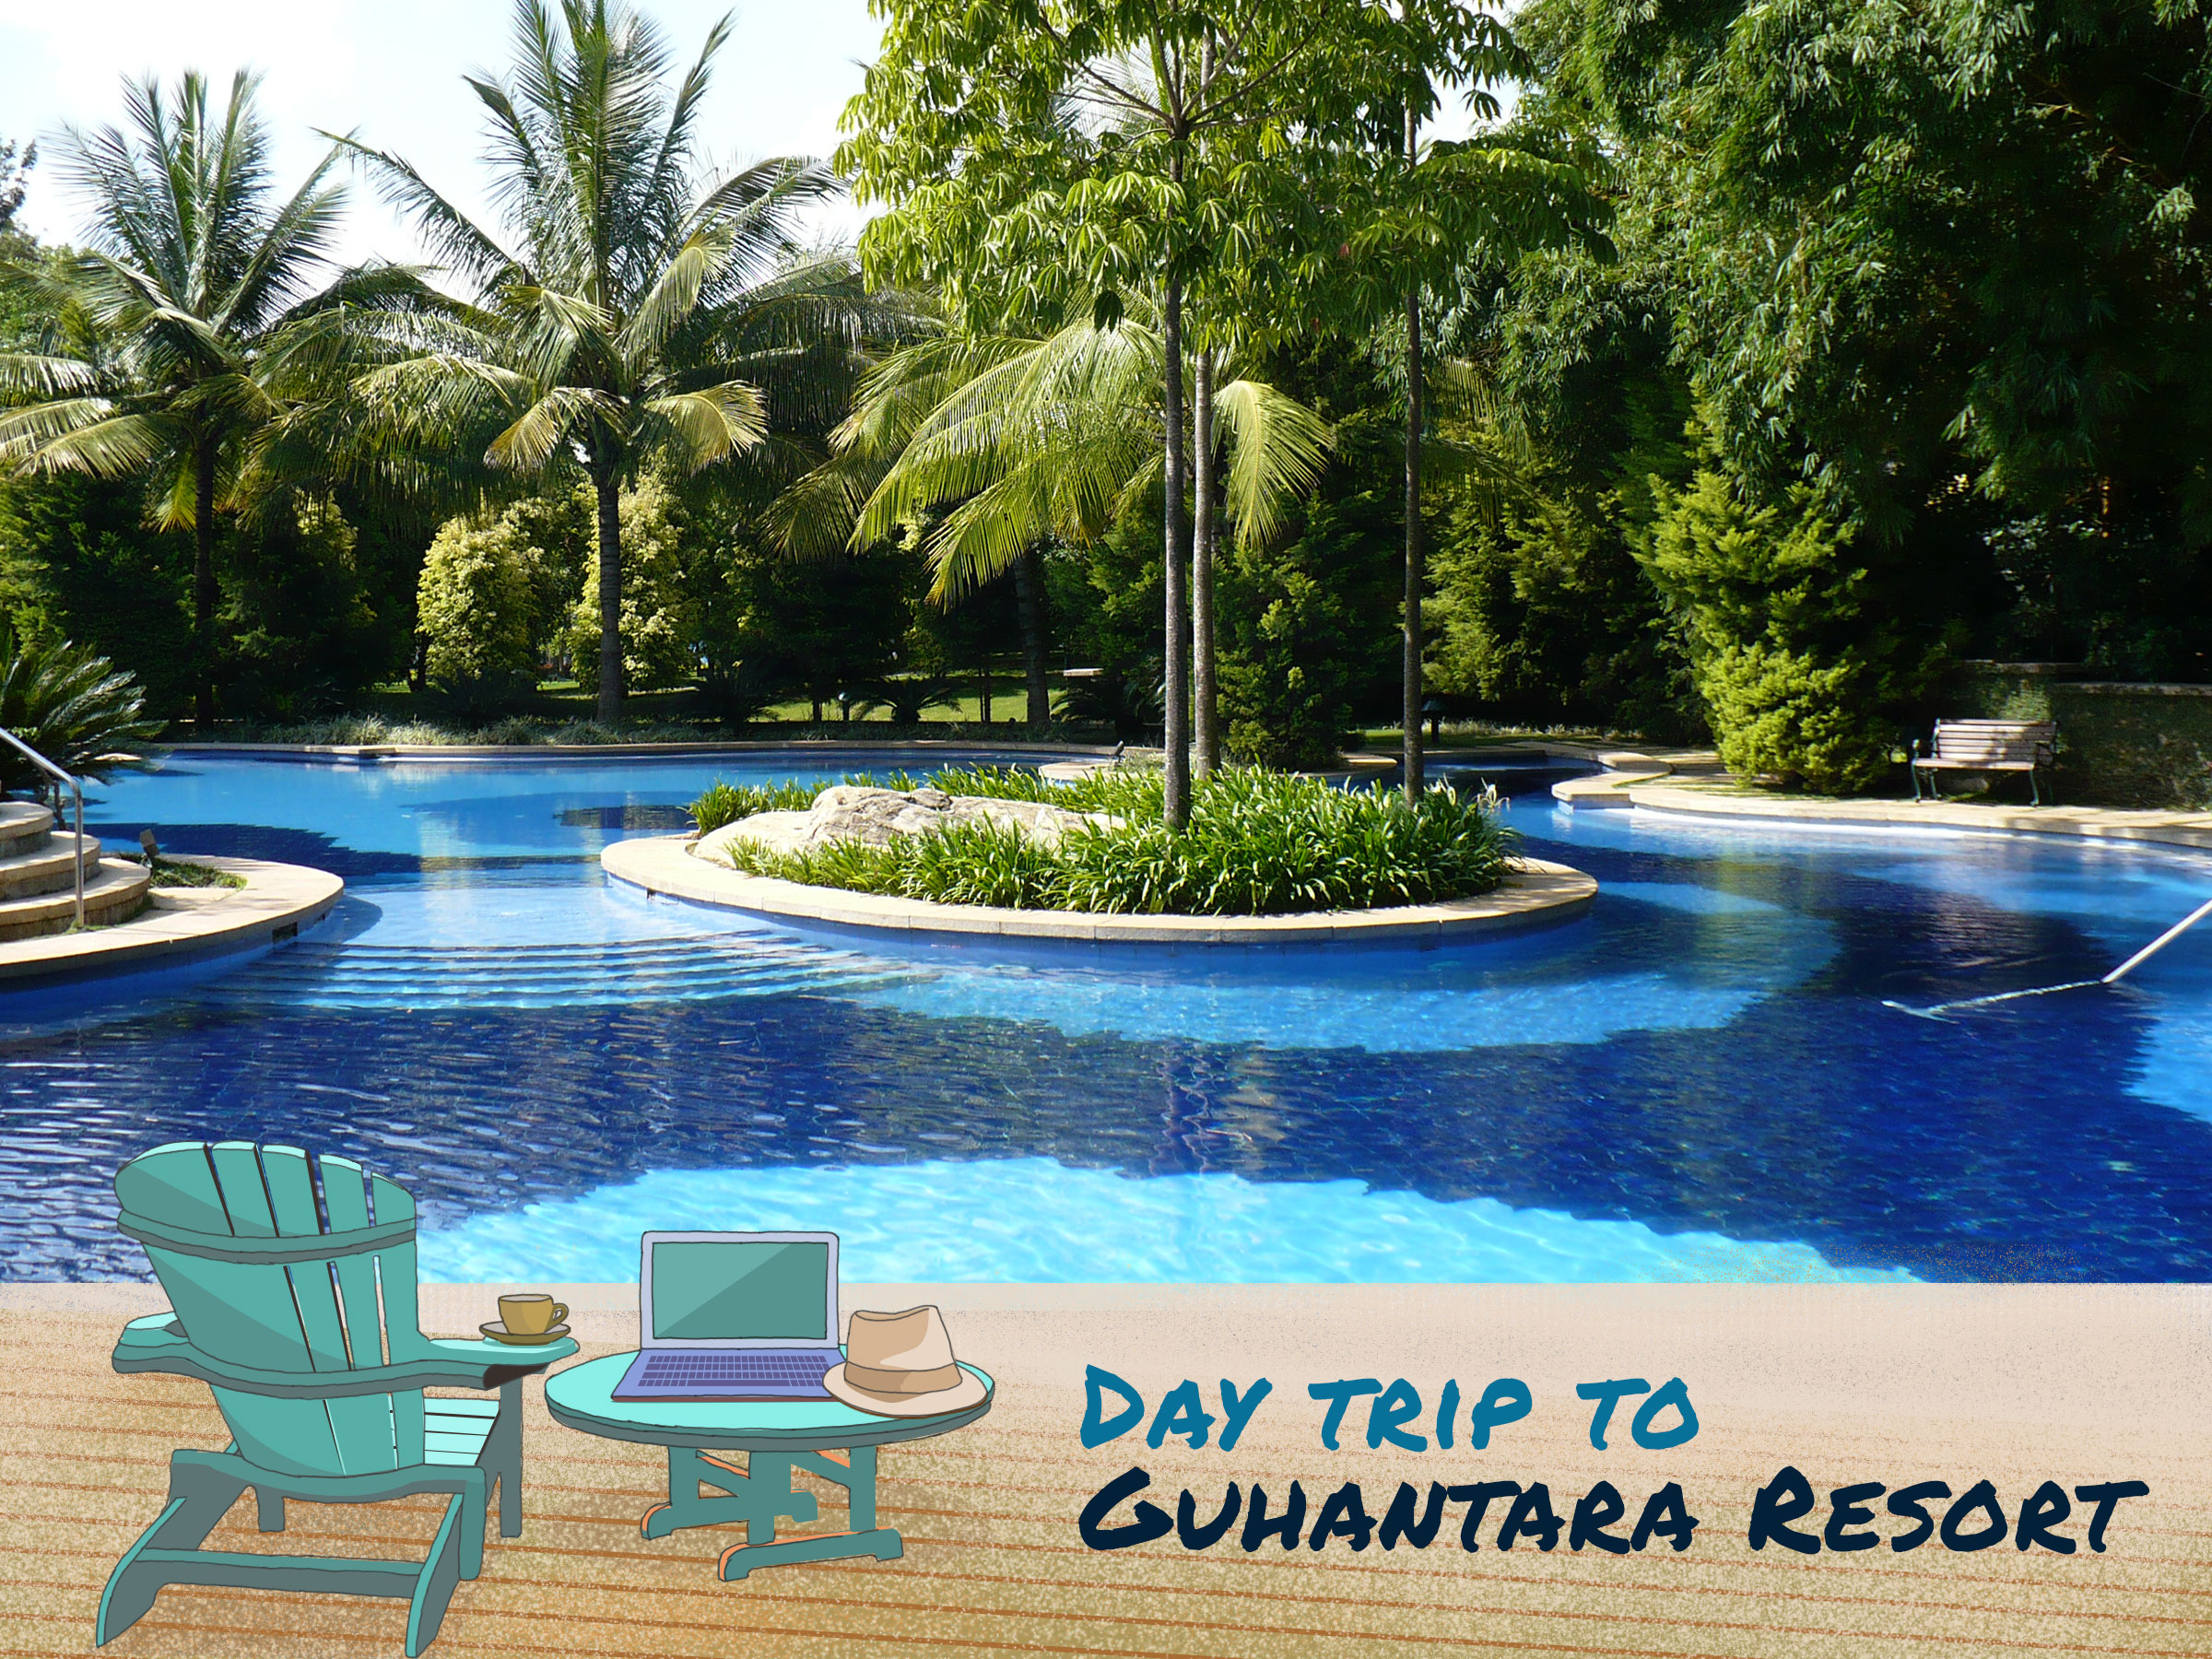 Day trip to Guhantara Resort